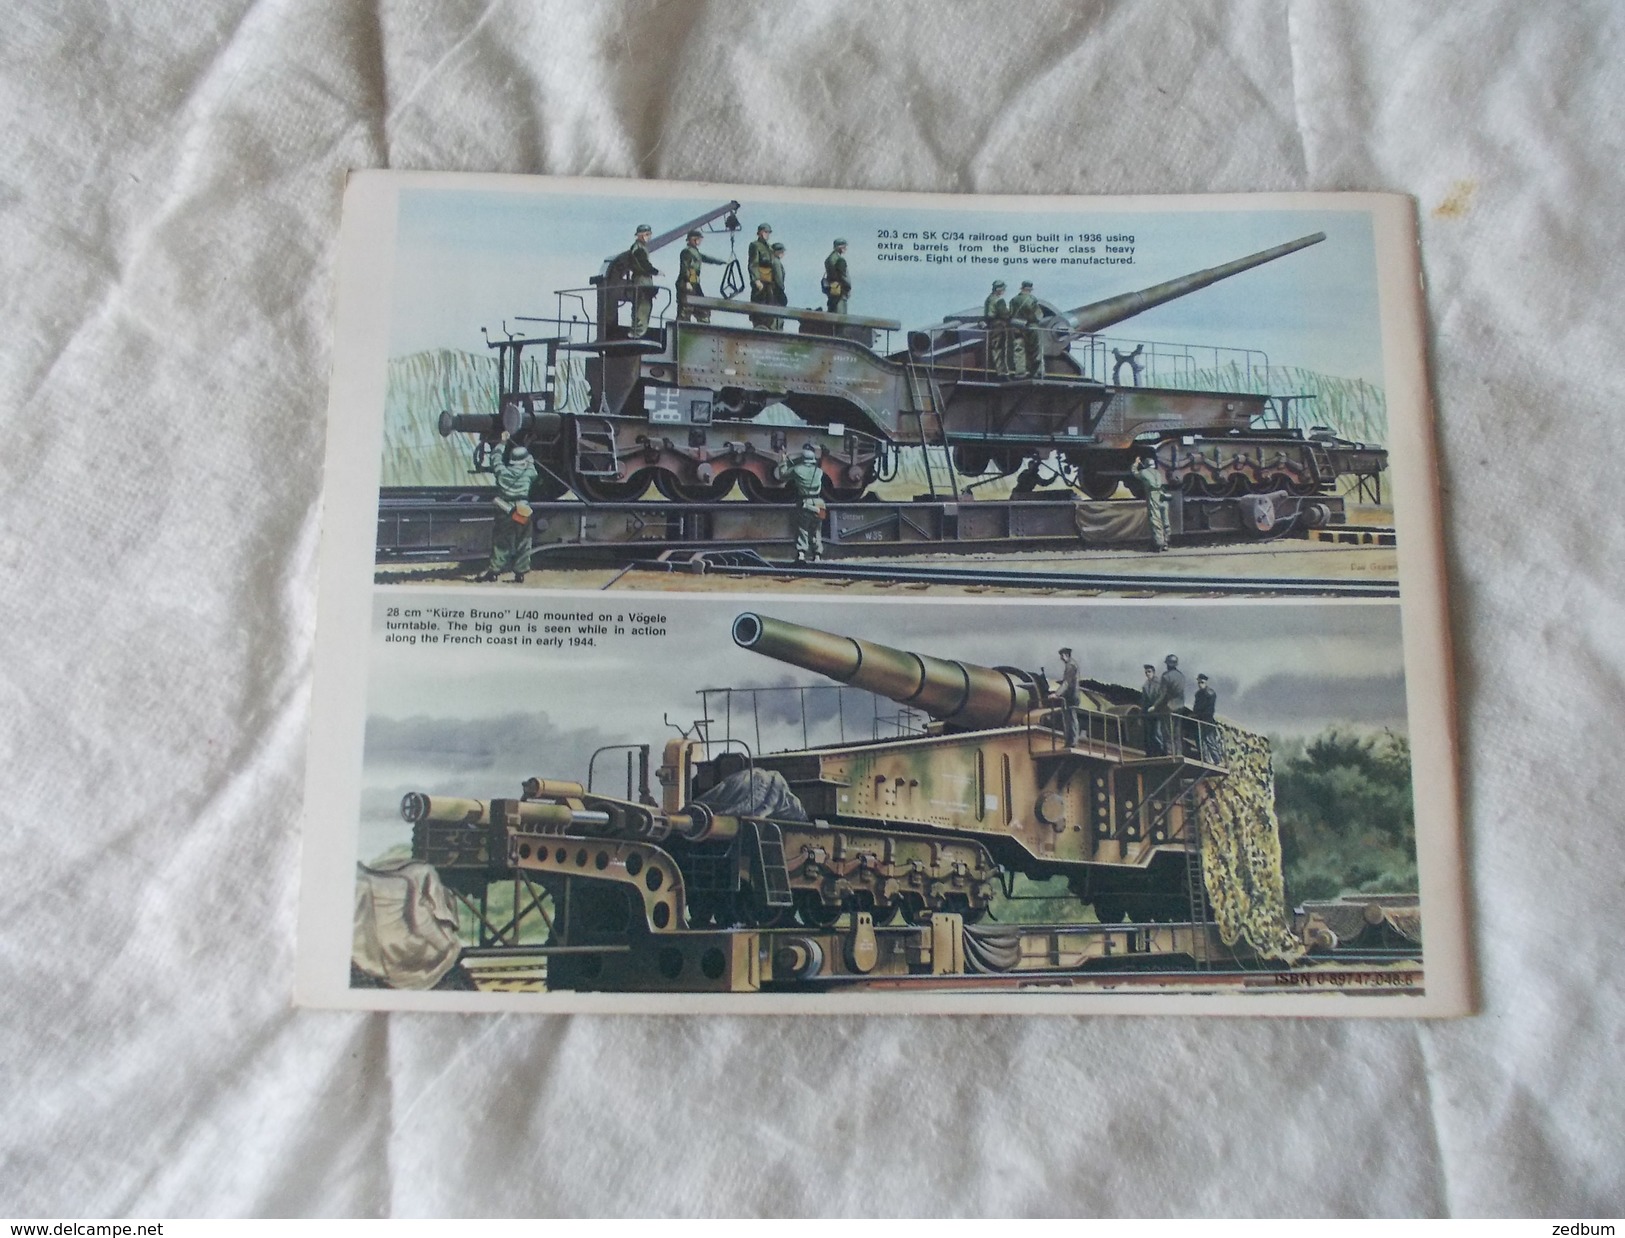 German Railroad Guns In Action  Train De Guerre - Themengebiet Sammeln